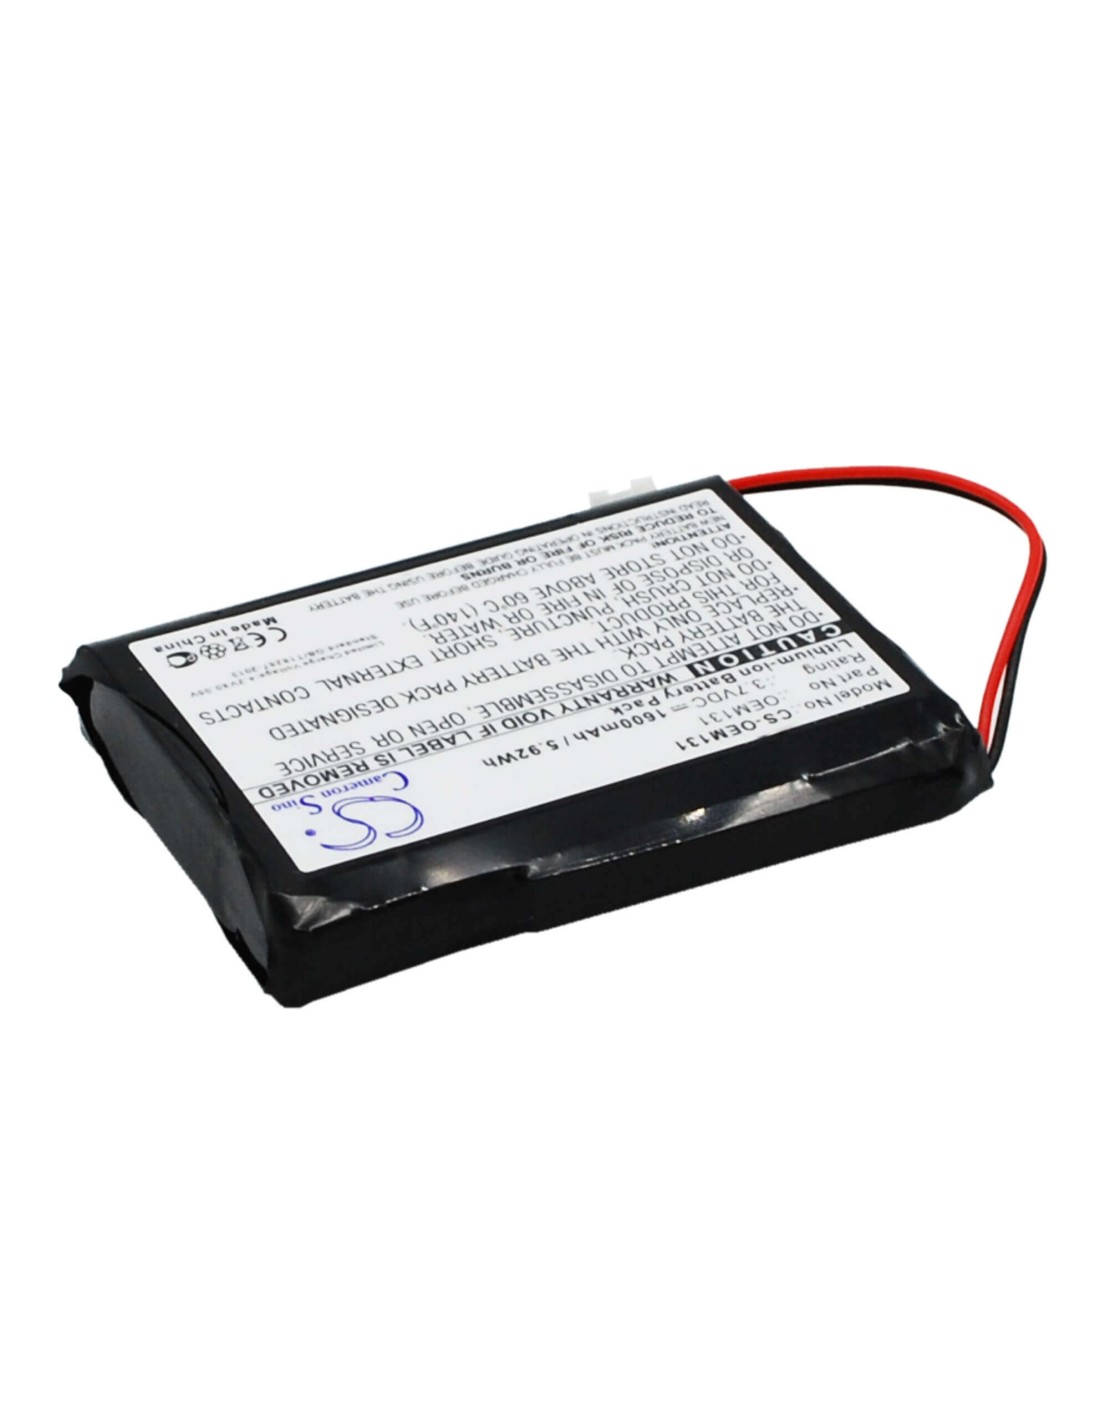 Battery for Cameron Sino, Custom Battery Packs 3.7V, 1600mAh - 5.92Wh